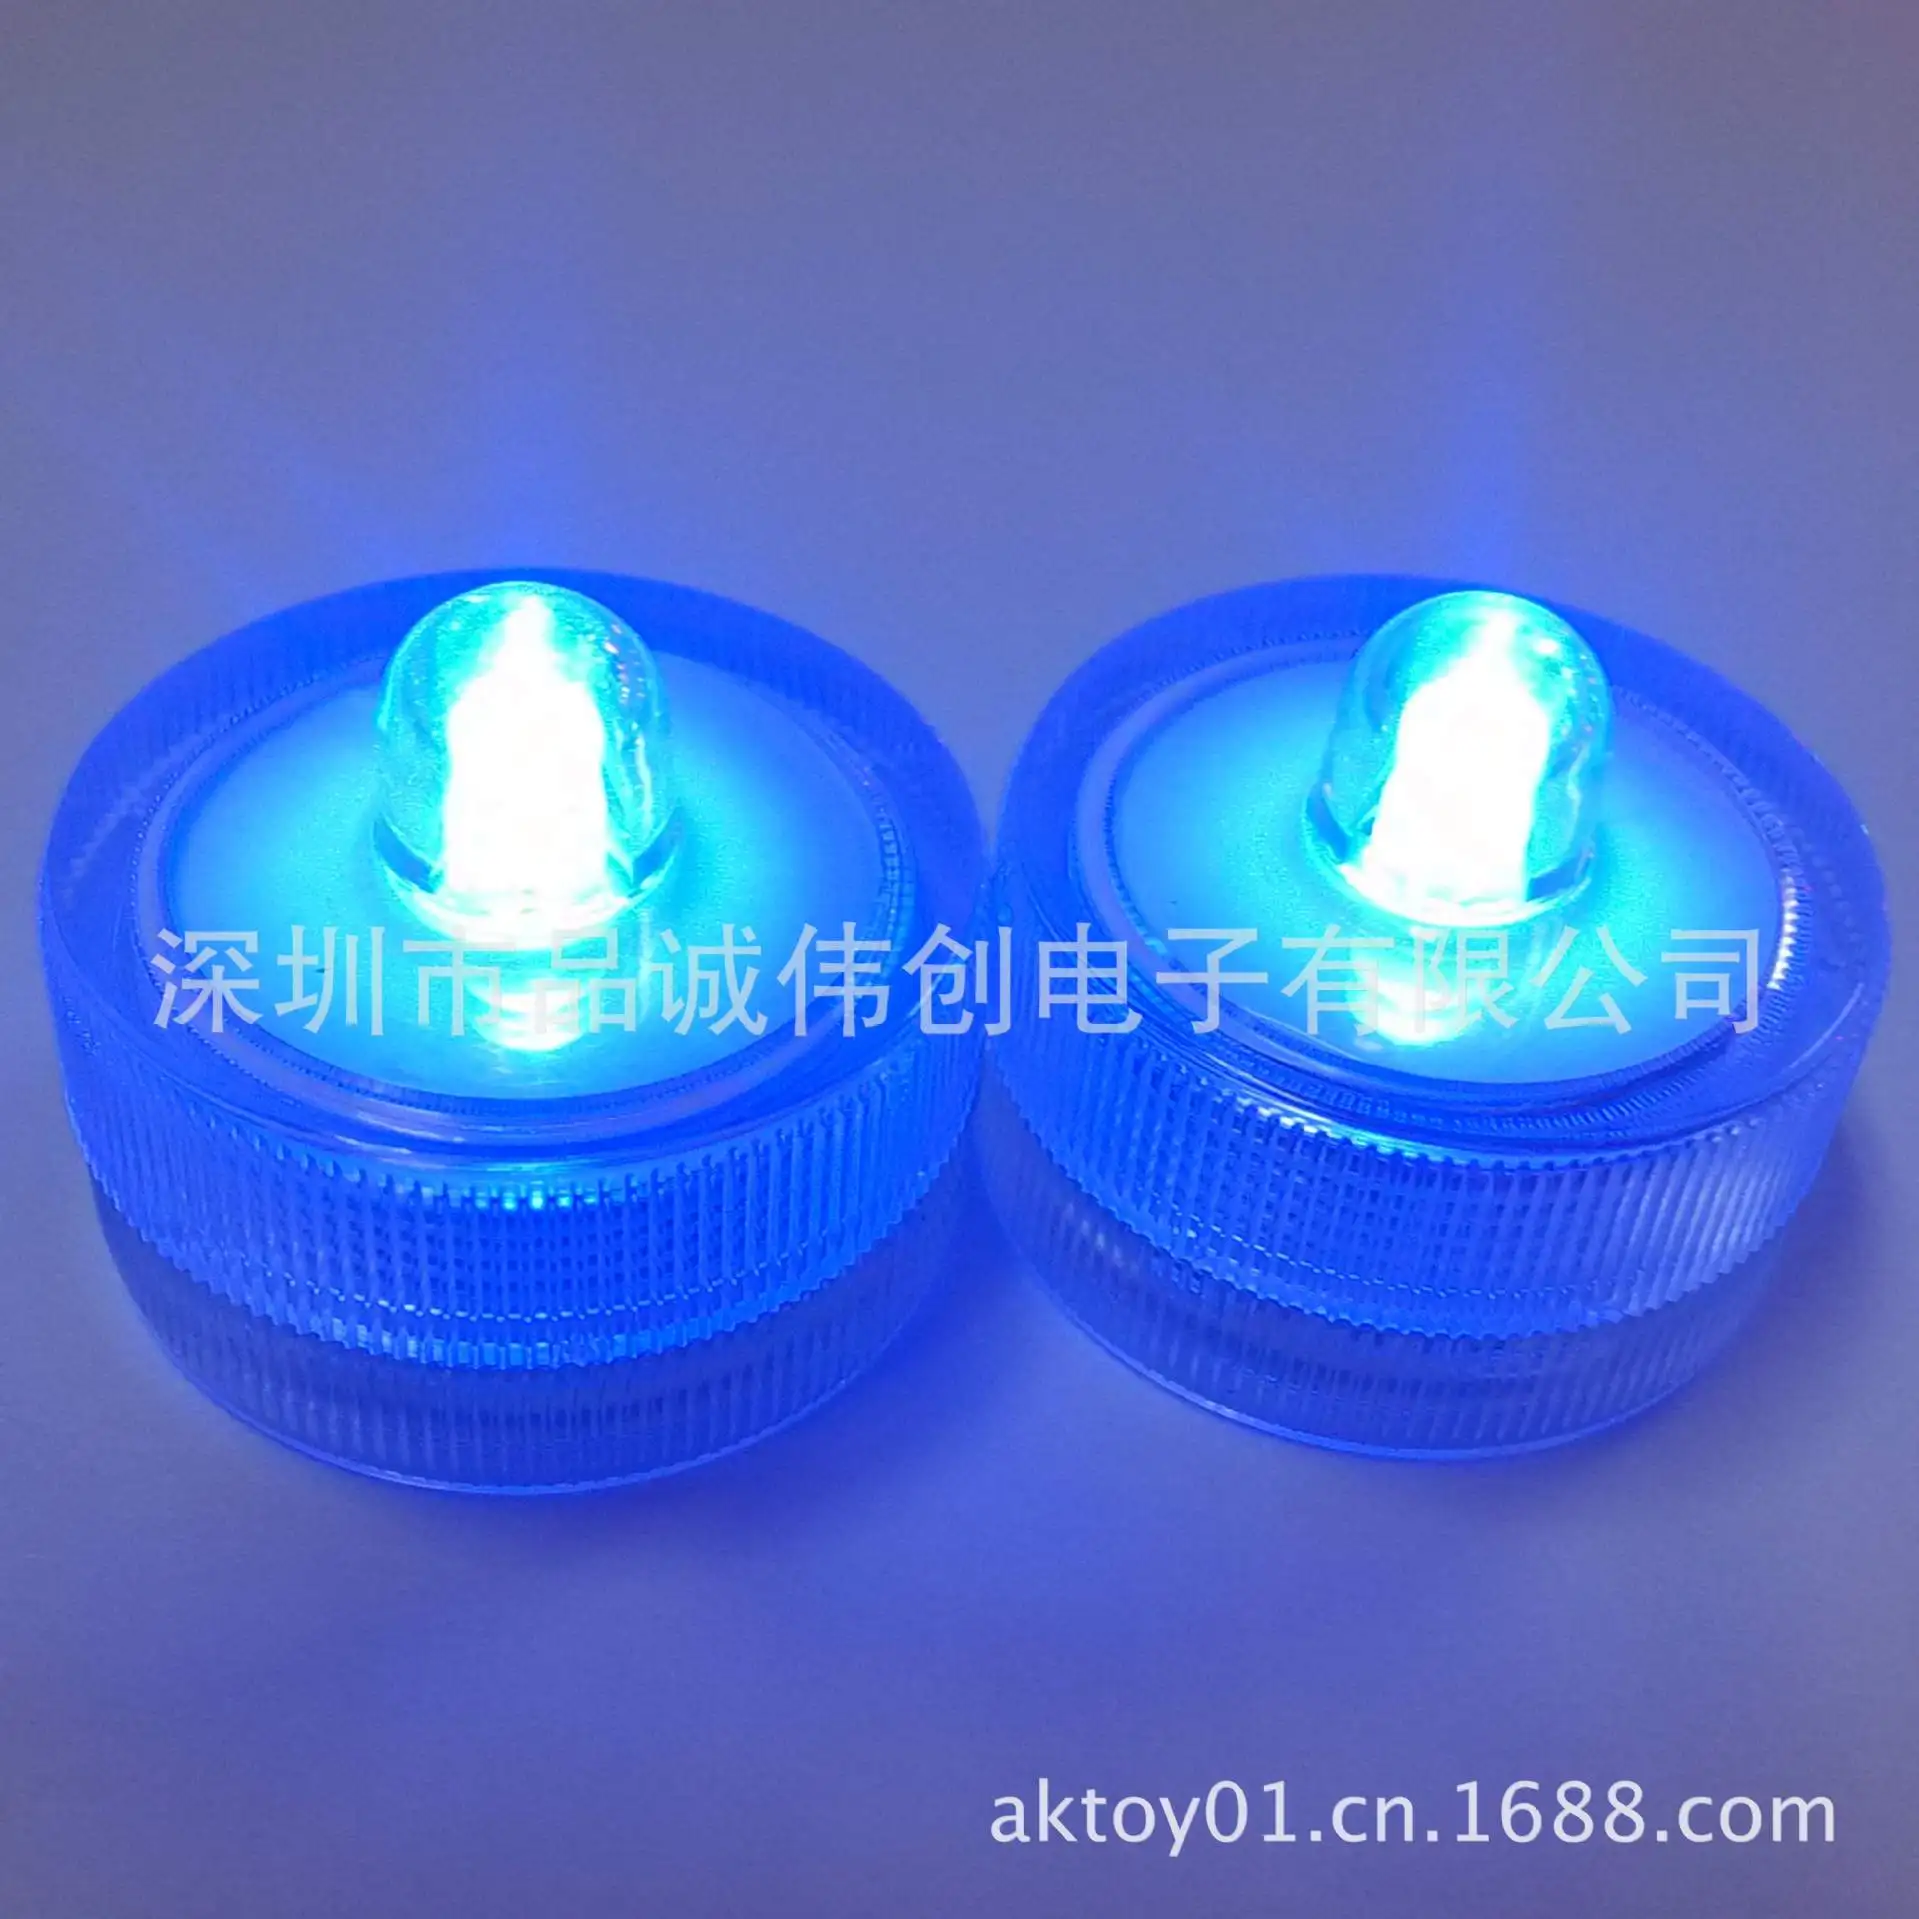 В настоящее время доступный источник светодиодный Водонепроницаемая свеча световая нить Дайвинг Свеча лампа круг водонепроницаемый свет